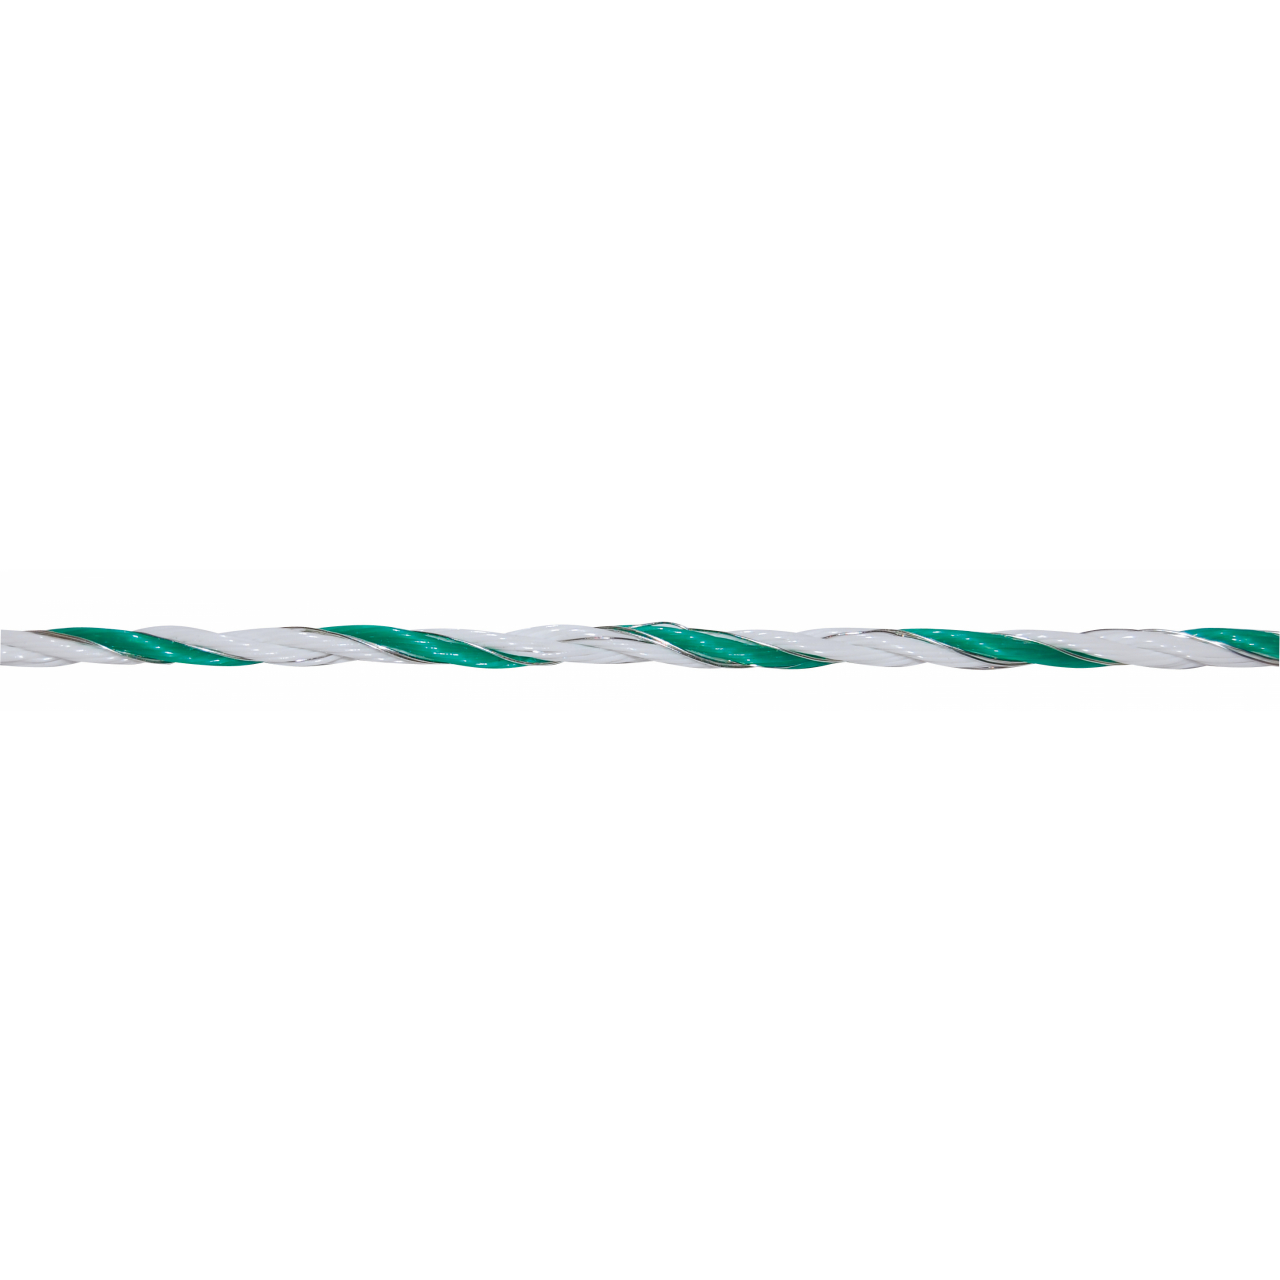 AKO PremiumLine villanypásztor vezeték - zöld/fehér, 250 m,3xCu 0,25 + 3xNi 0,20